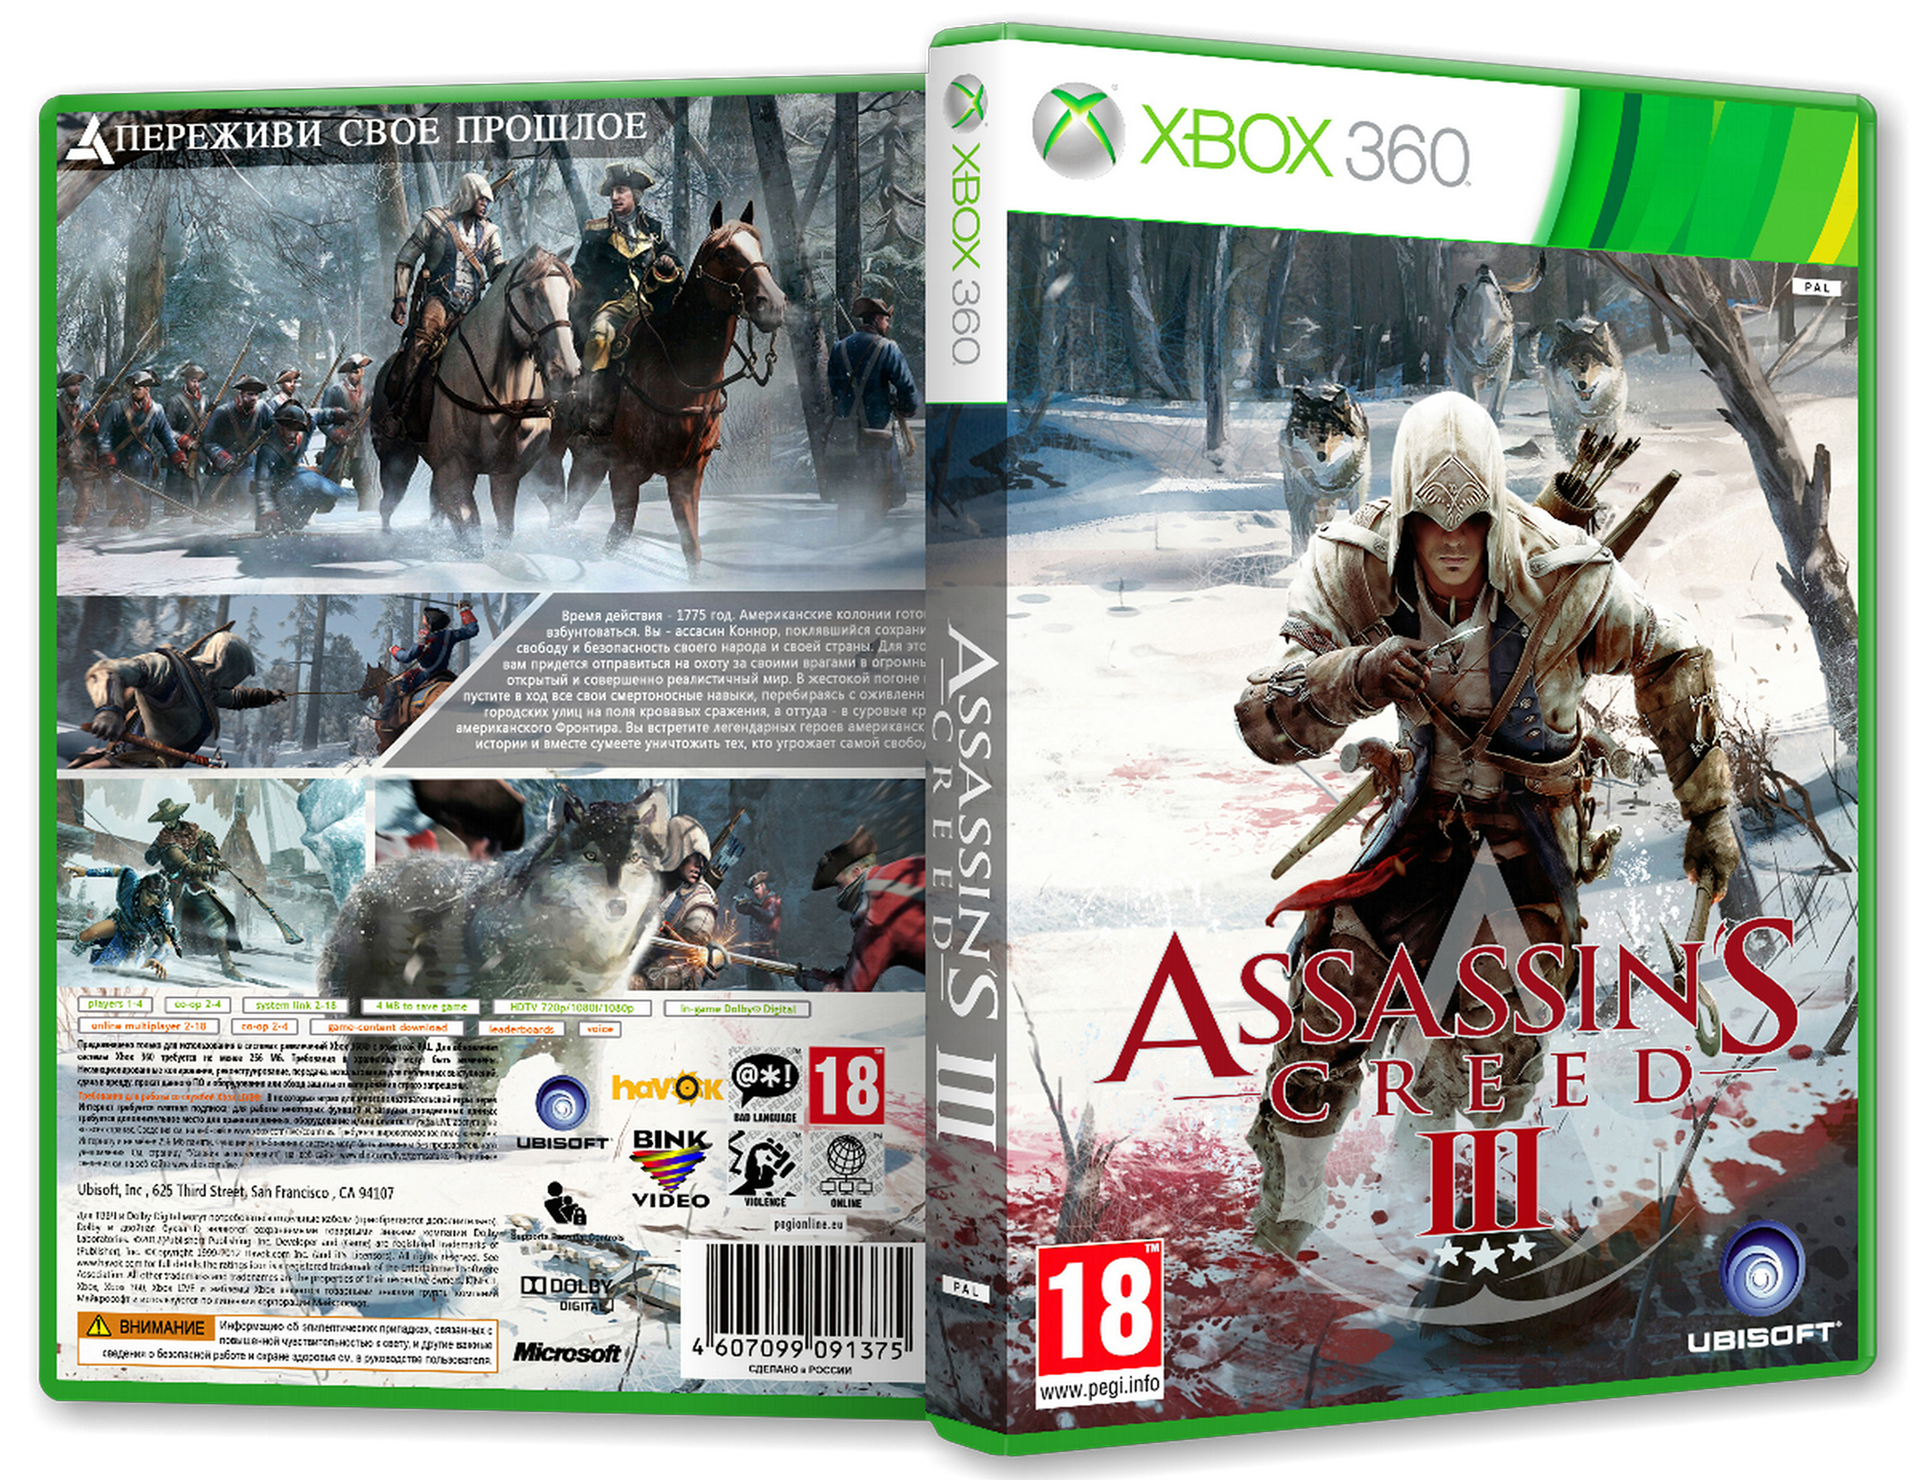 Ассасин Крид 3 Xbox 360. Assassins Creed 3 [Xbox 360]. Ассасин Крид 3 на хбокс 360. Assassins Creed 3 диск для Xbox 360.